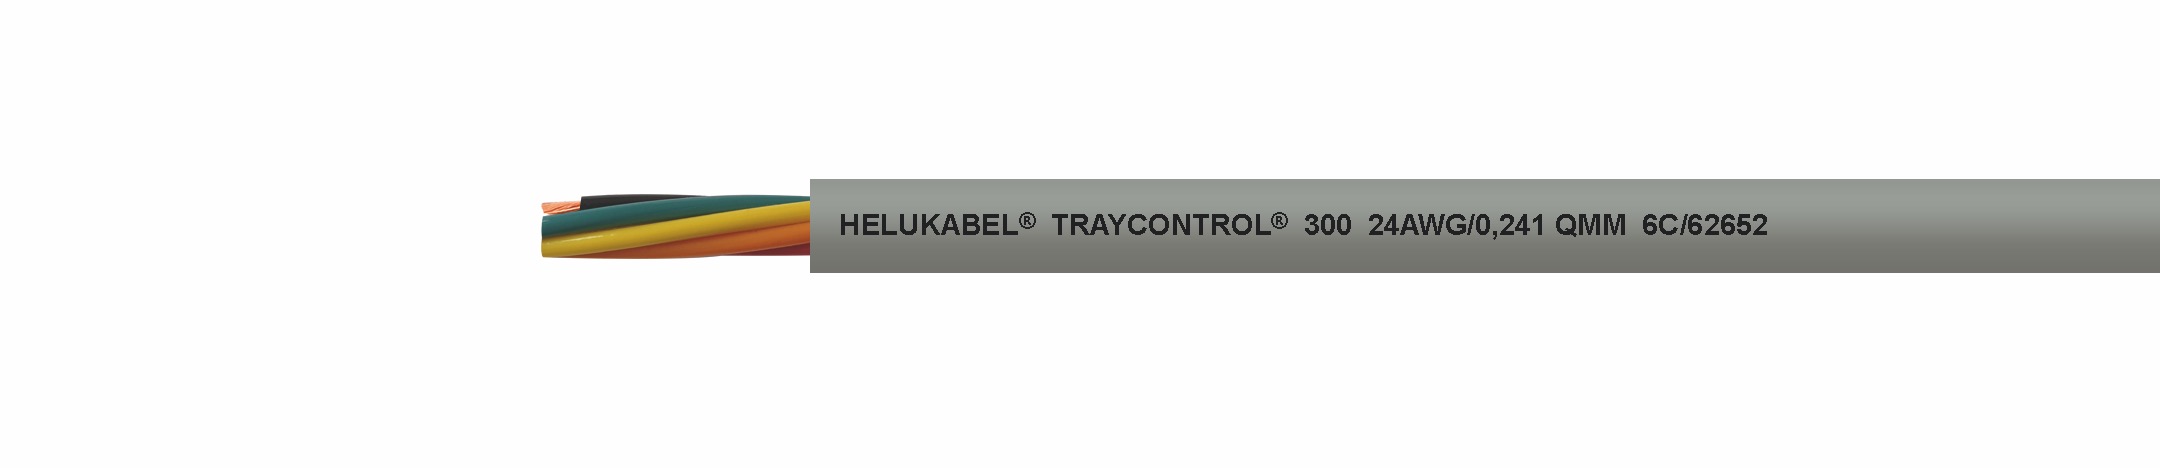 Cable Helukabel: TRAYCONTROL 300 (UL)